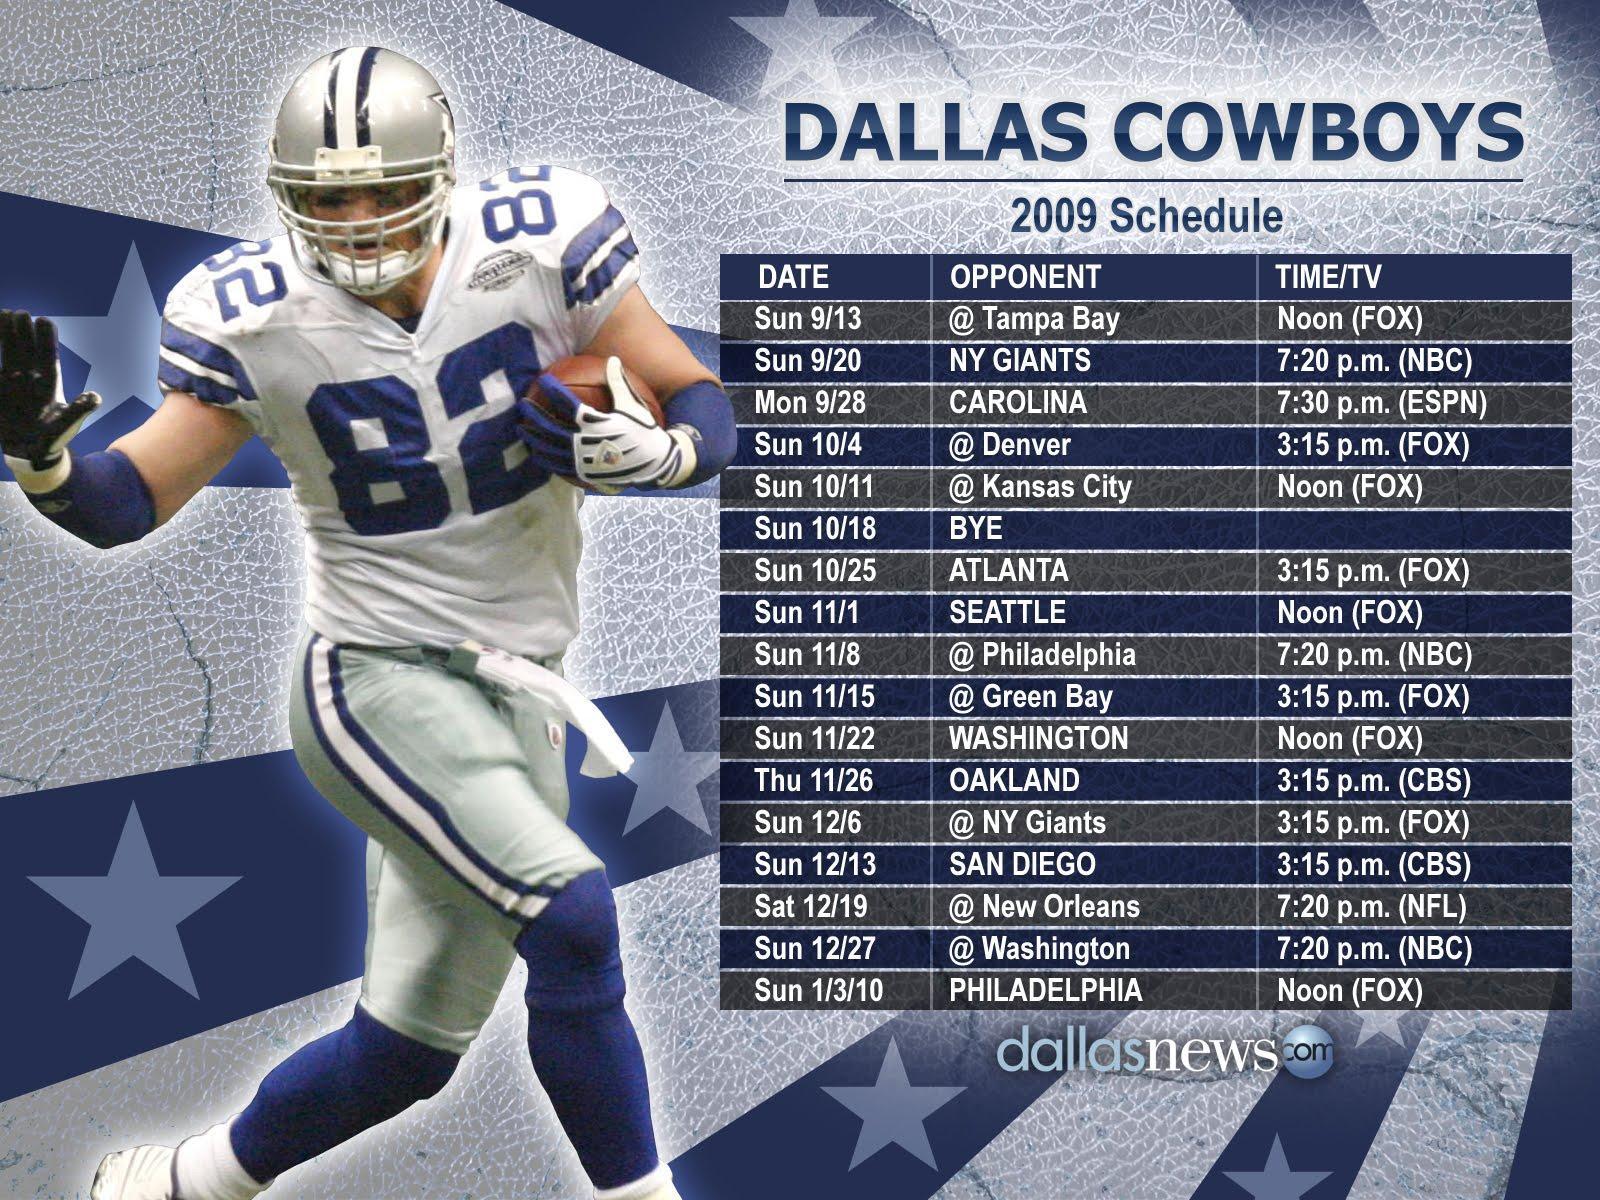 Free Dallas Cowboys background image. Dallas Cowboys wallpaper